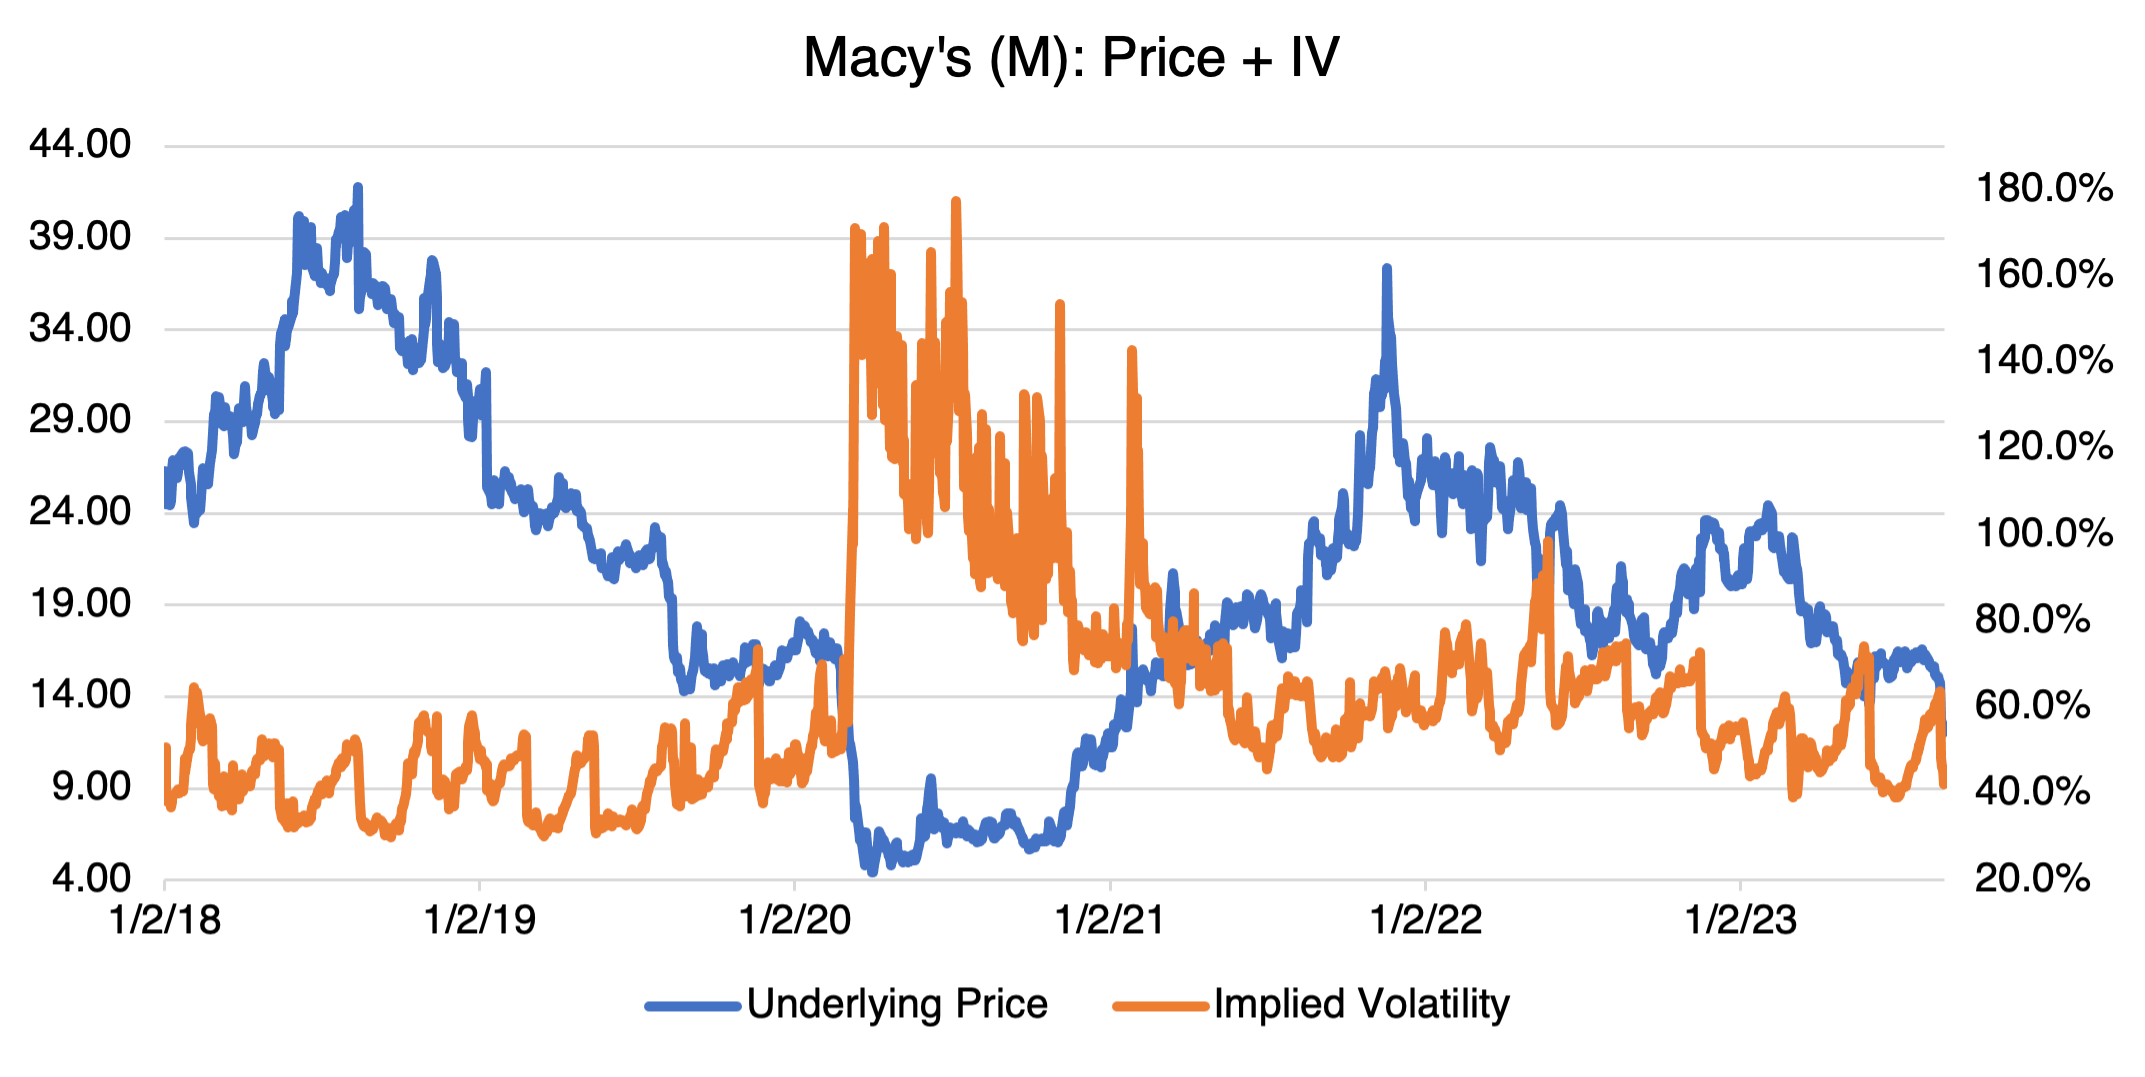 Macy's Price + IV